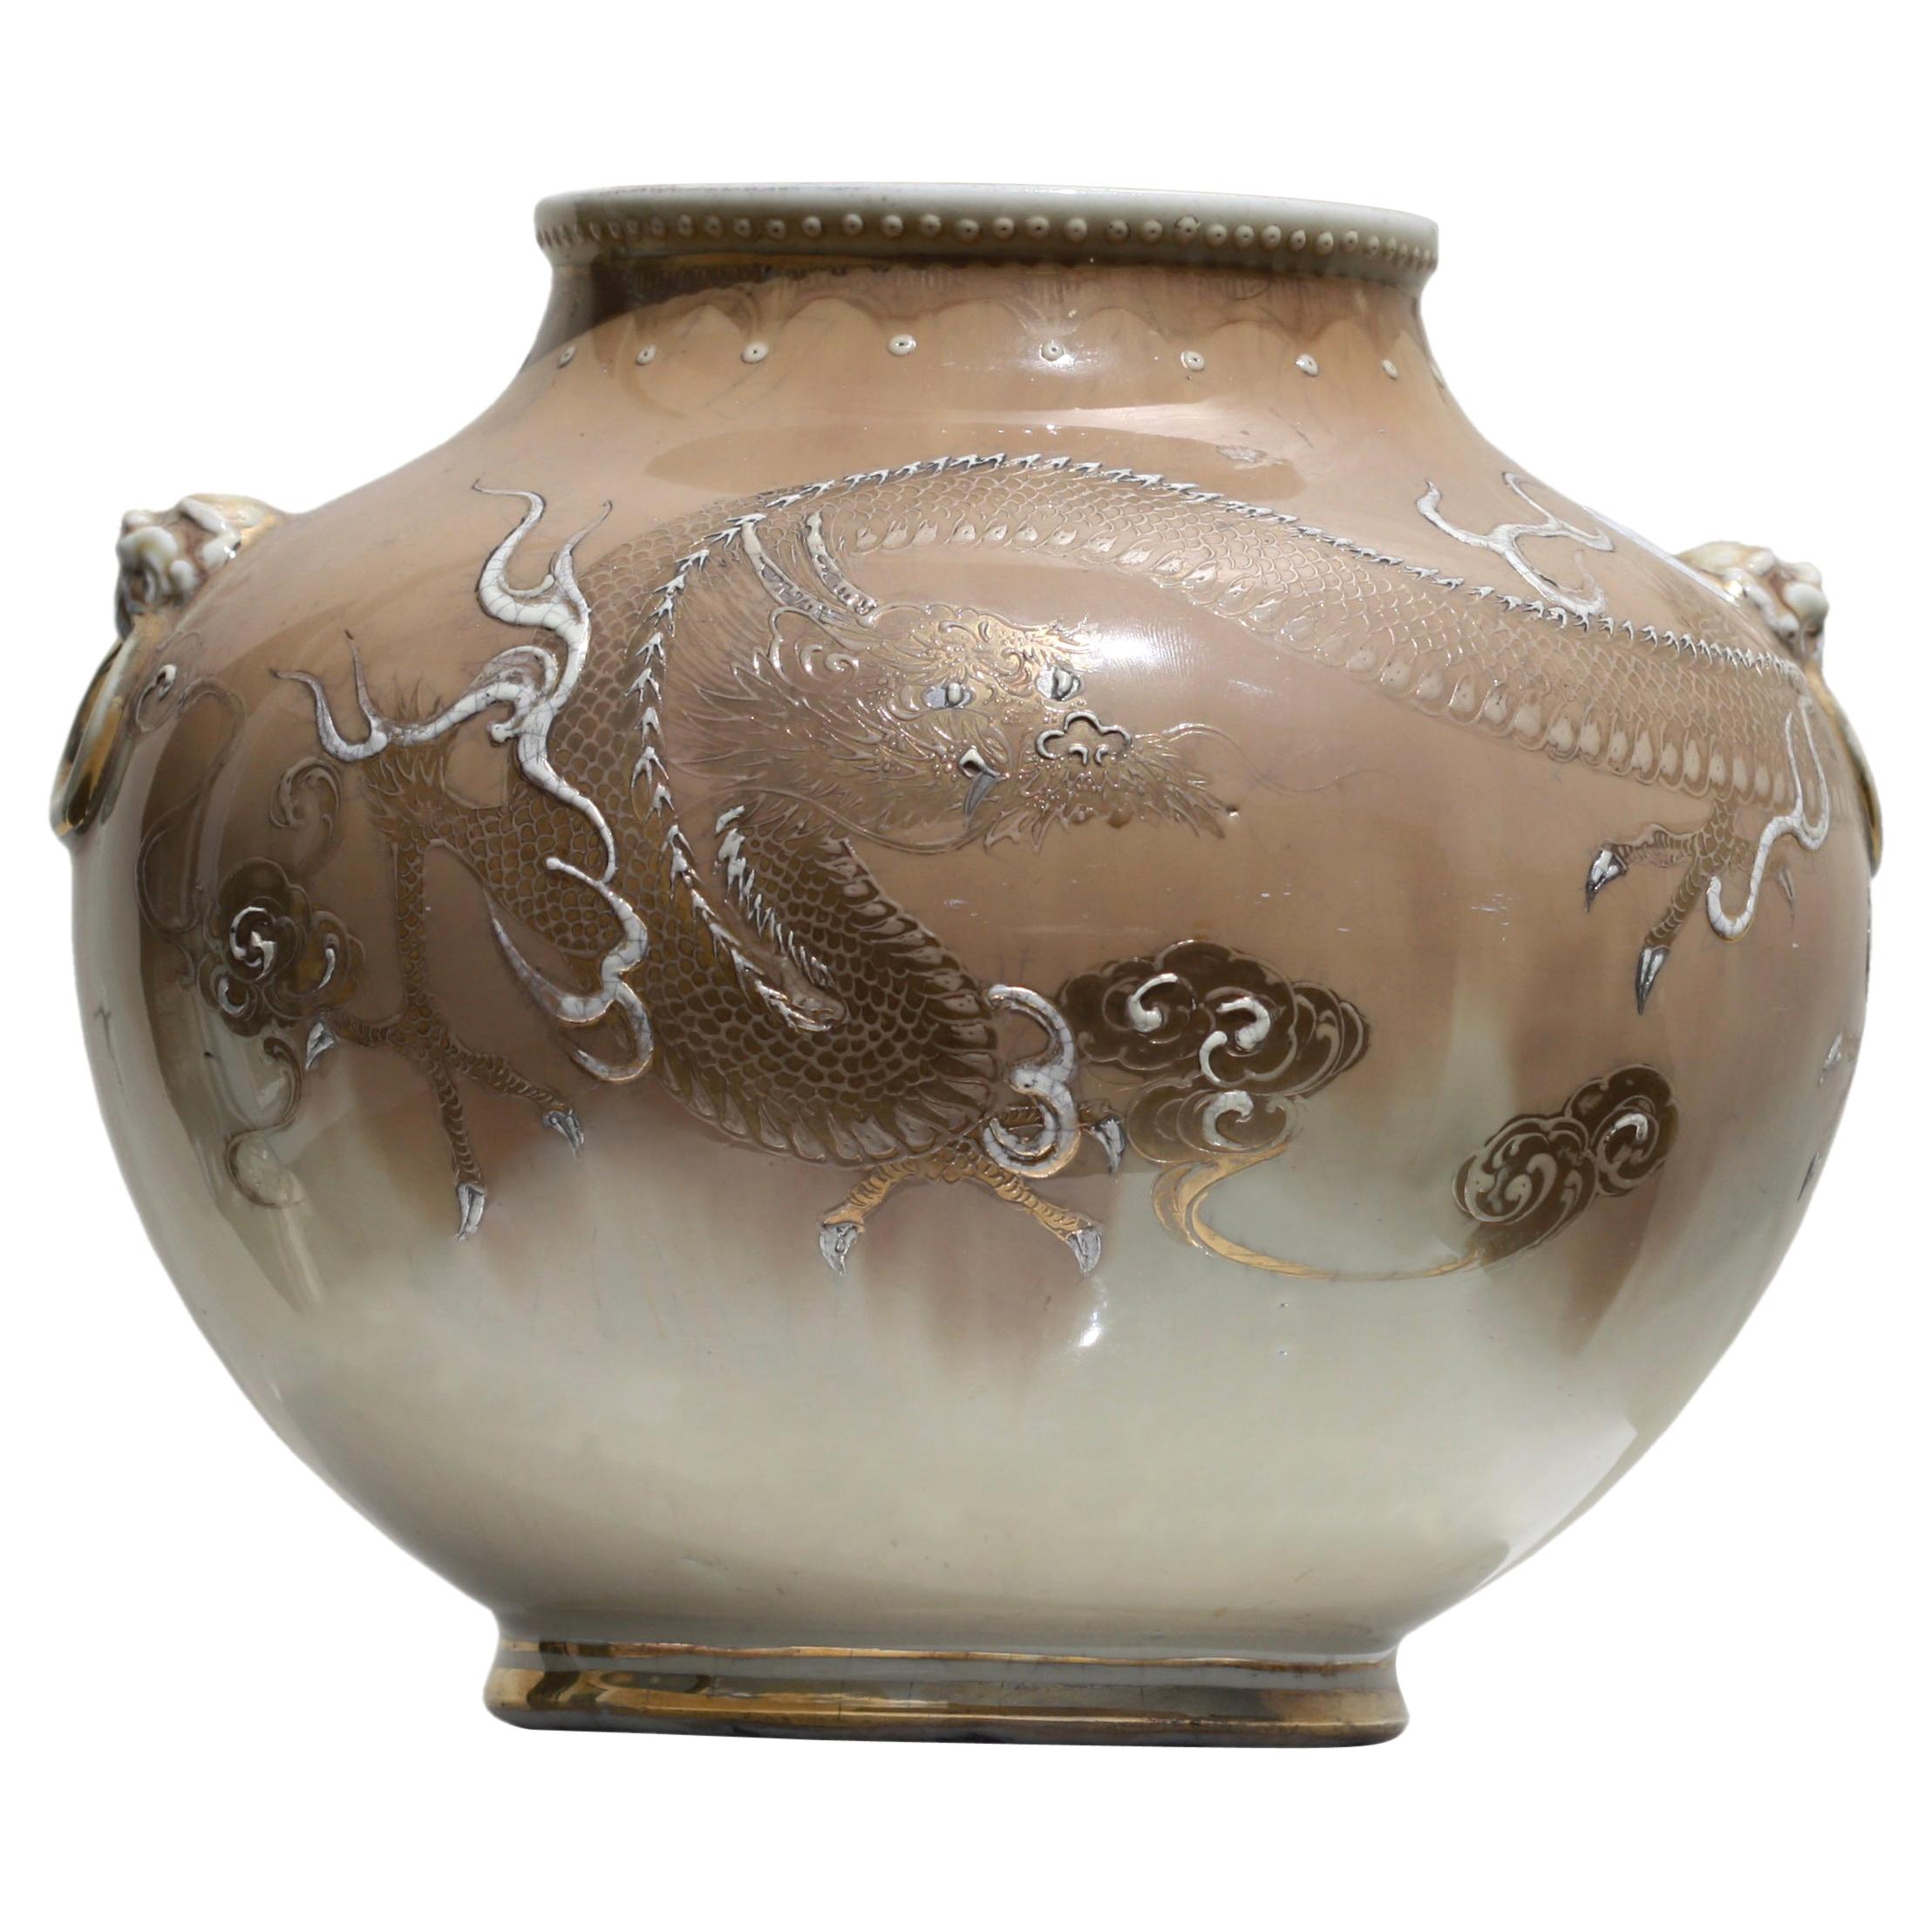 Japanisches Globusglas aus japanischem Porzellan mit Drachen